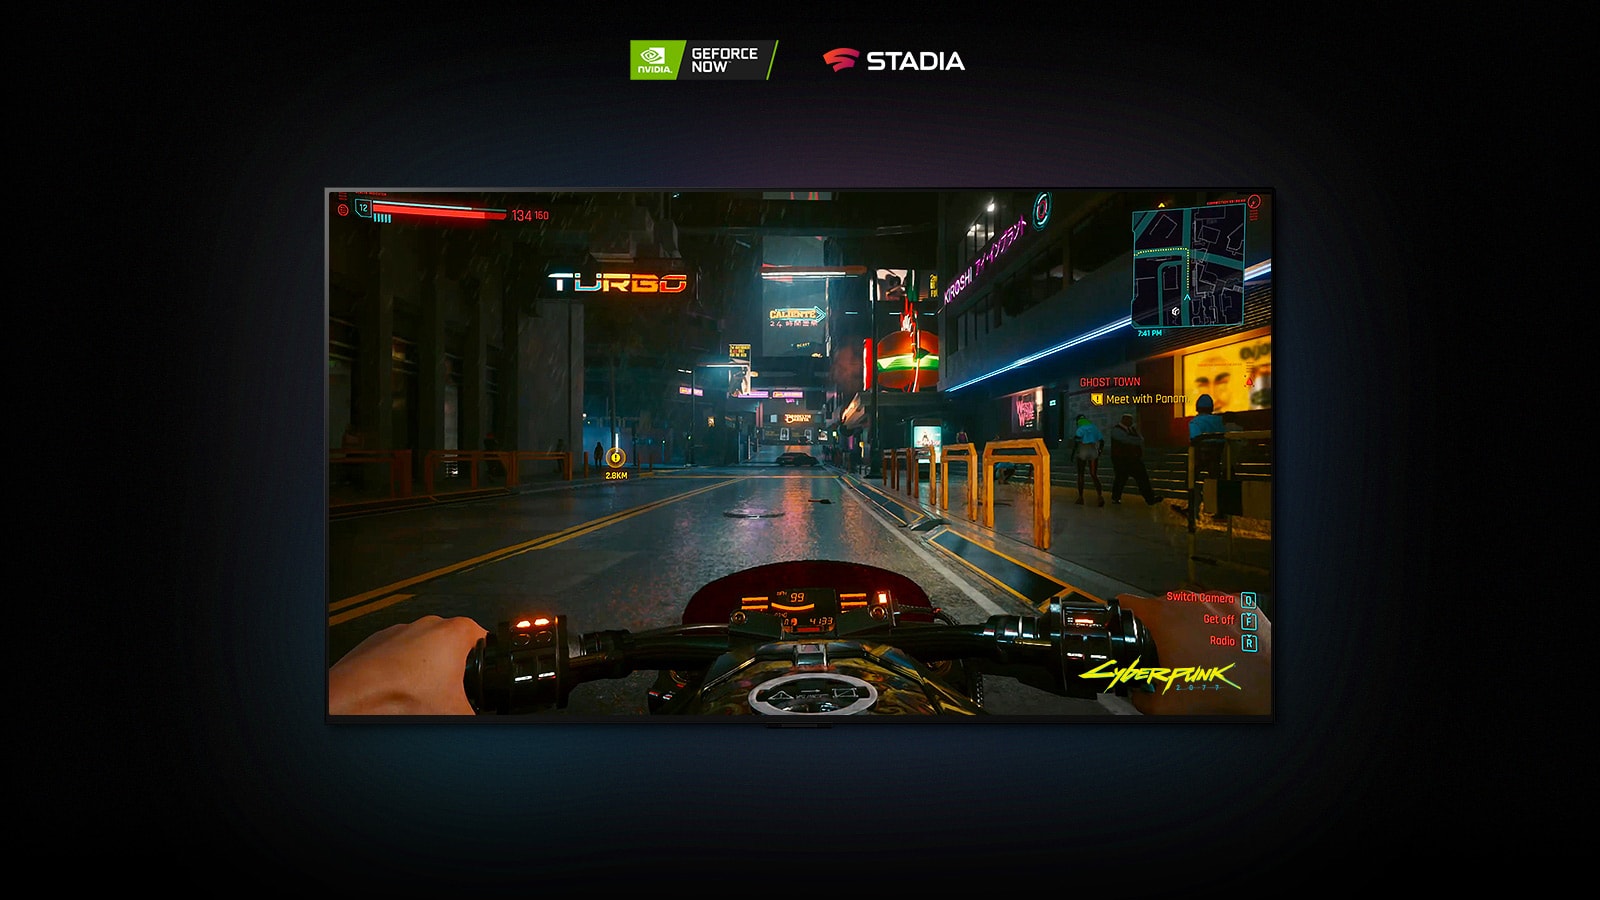 Zaslon LG OLED prikazuje prizor iz Cyberpunk 2077, v katerem se igralec vozi po ulici, osvetljeni z neonskimi lučmi